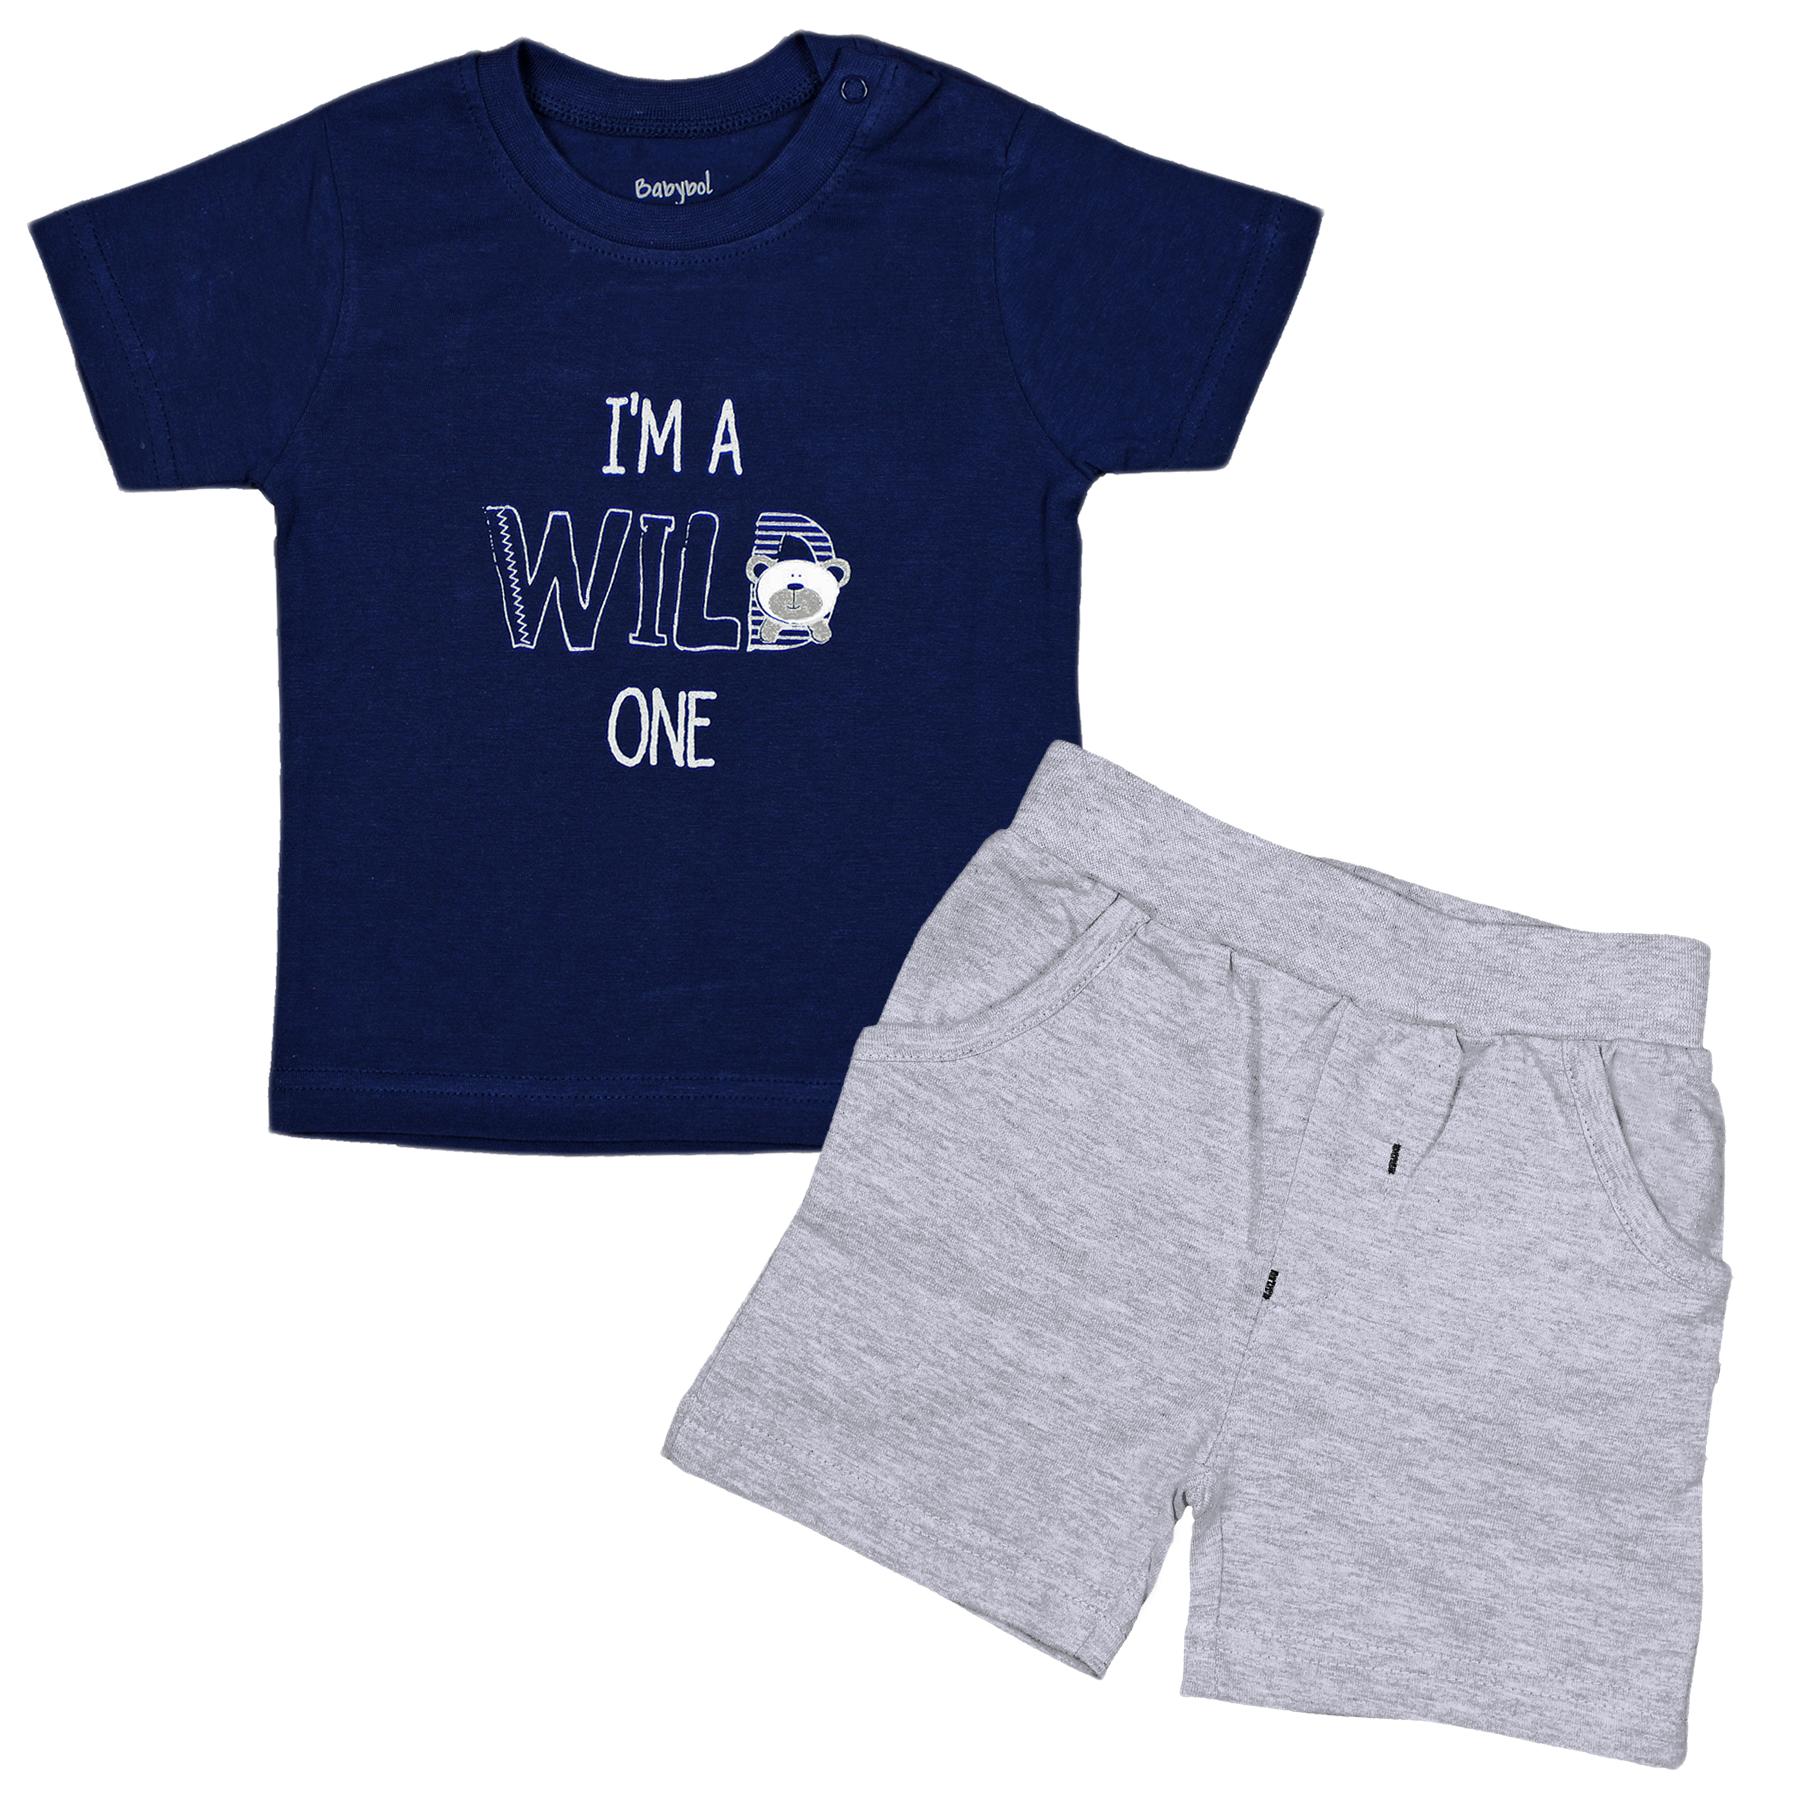 Babybol Barcelona Wild One Cotton T-Shirt & Shorts